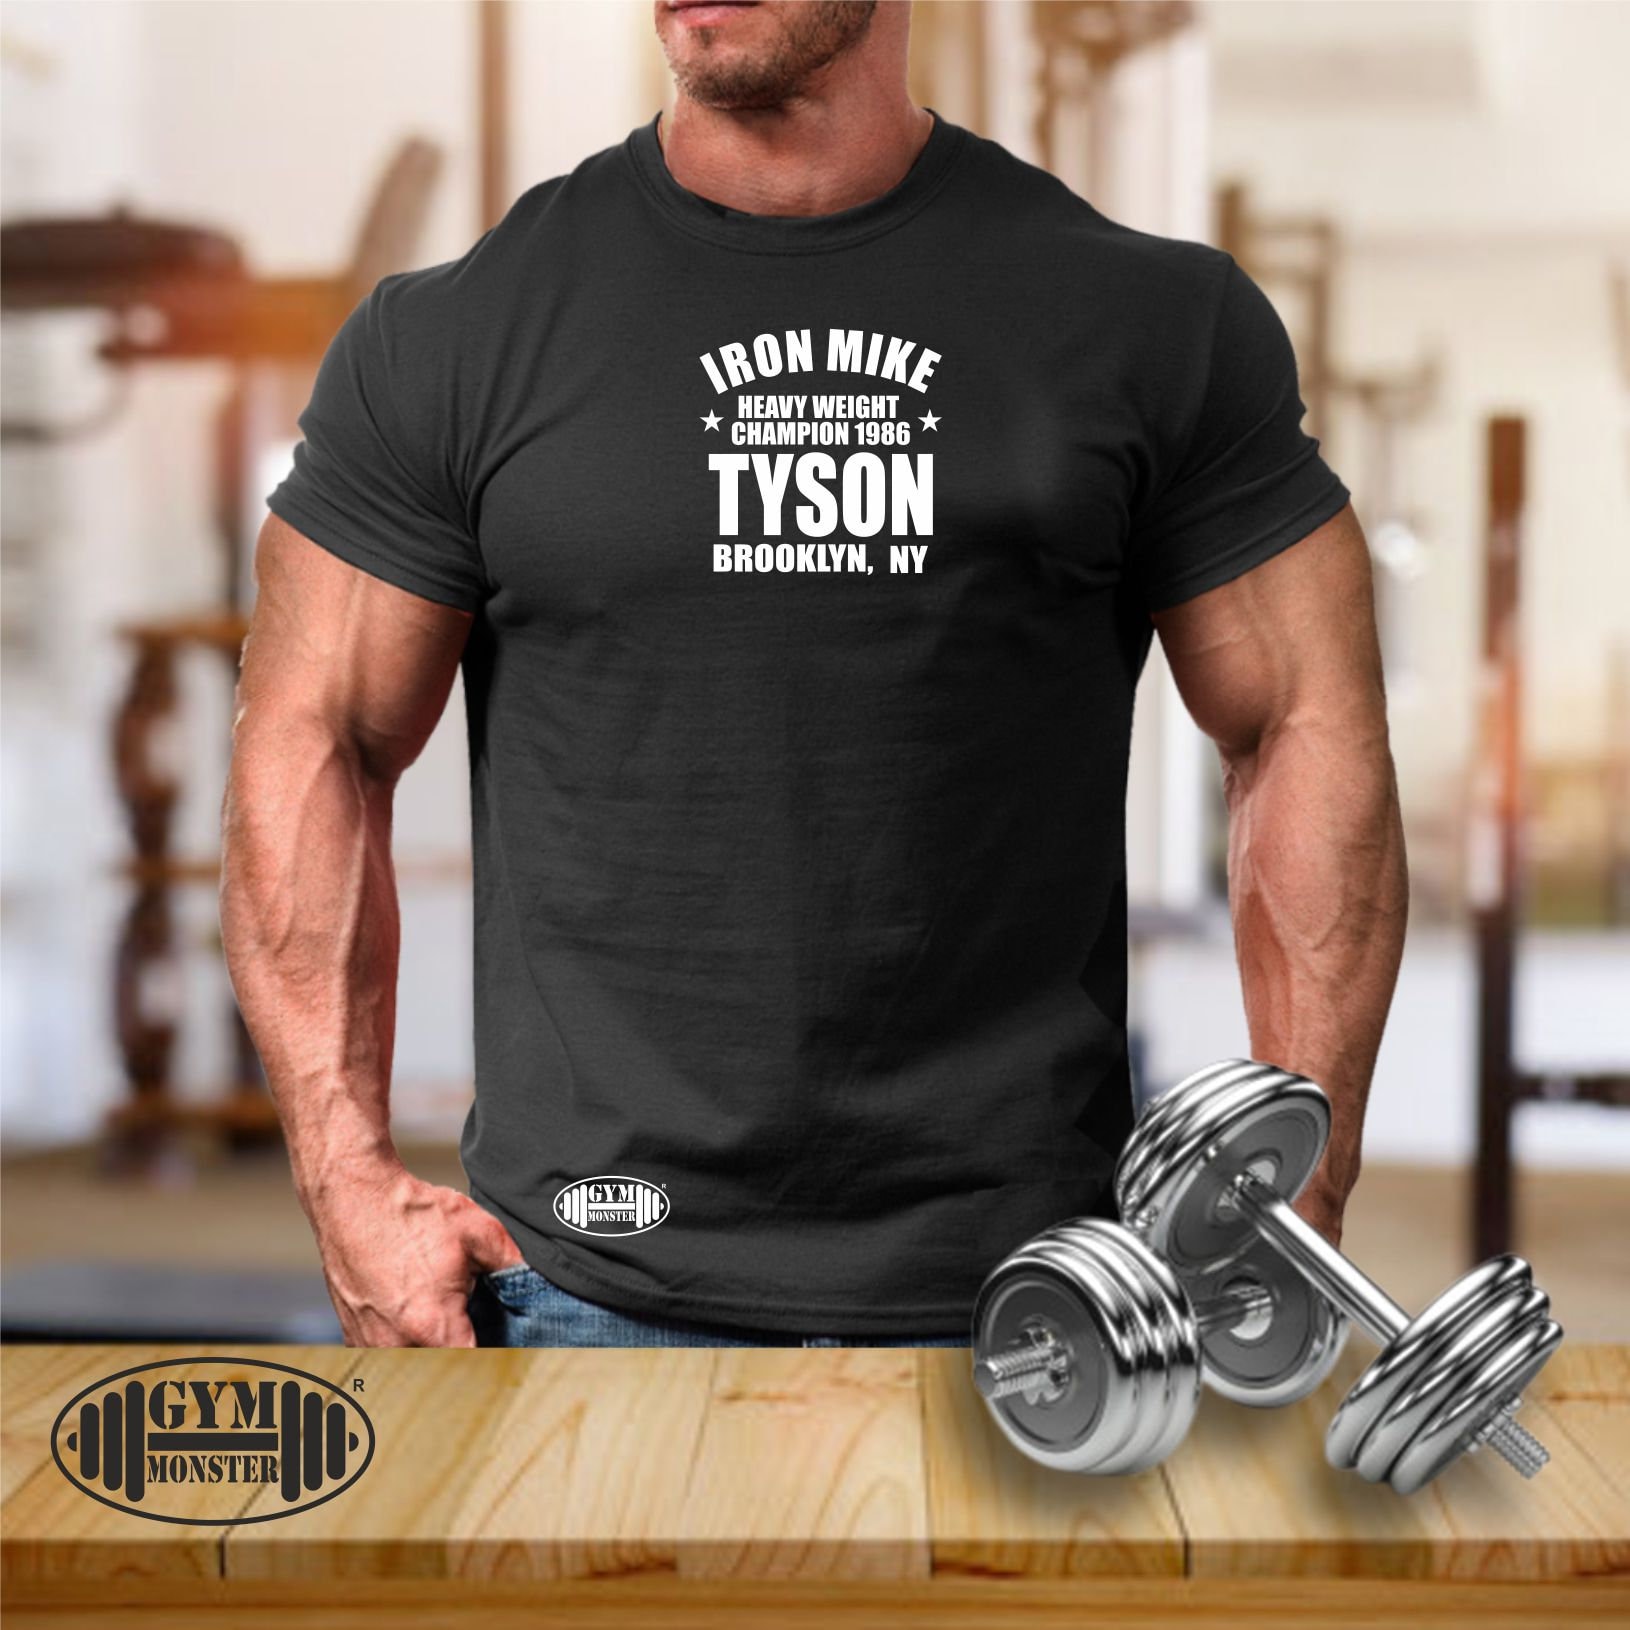 Iron Mike T Shirt Gym Kleidung Bodybuilding Training Übung Boxen Tyson Heavy Weight Champion 1986 Monster Herren T-Shirt von TheGymMonsterTGM